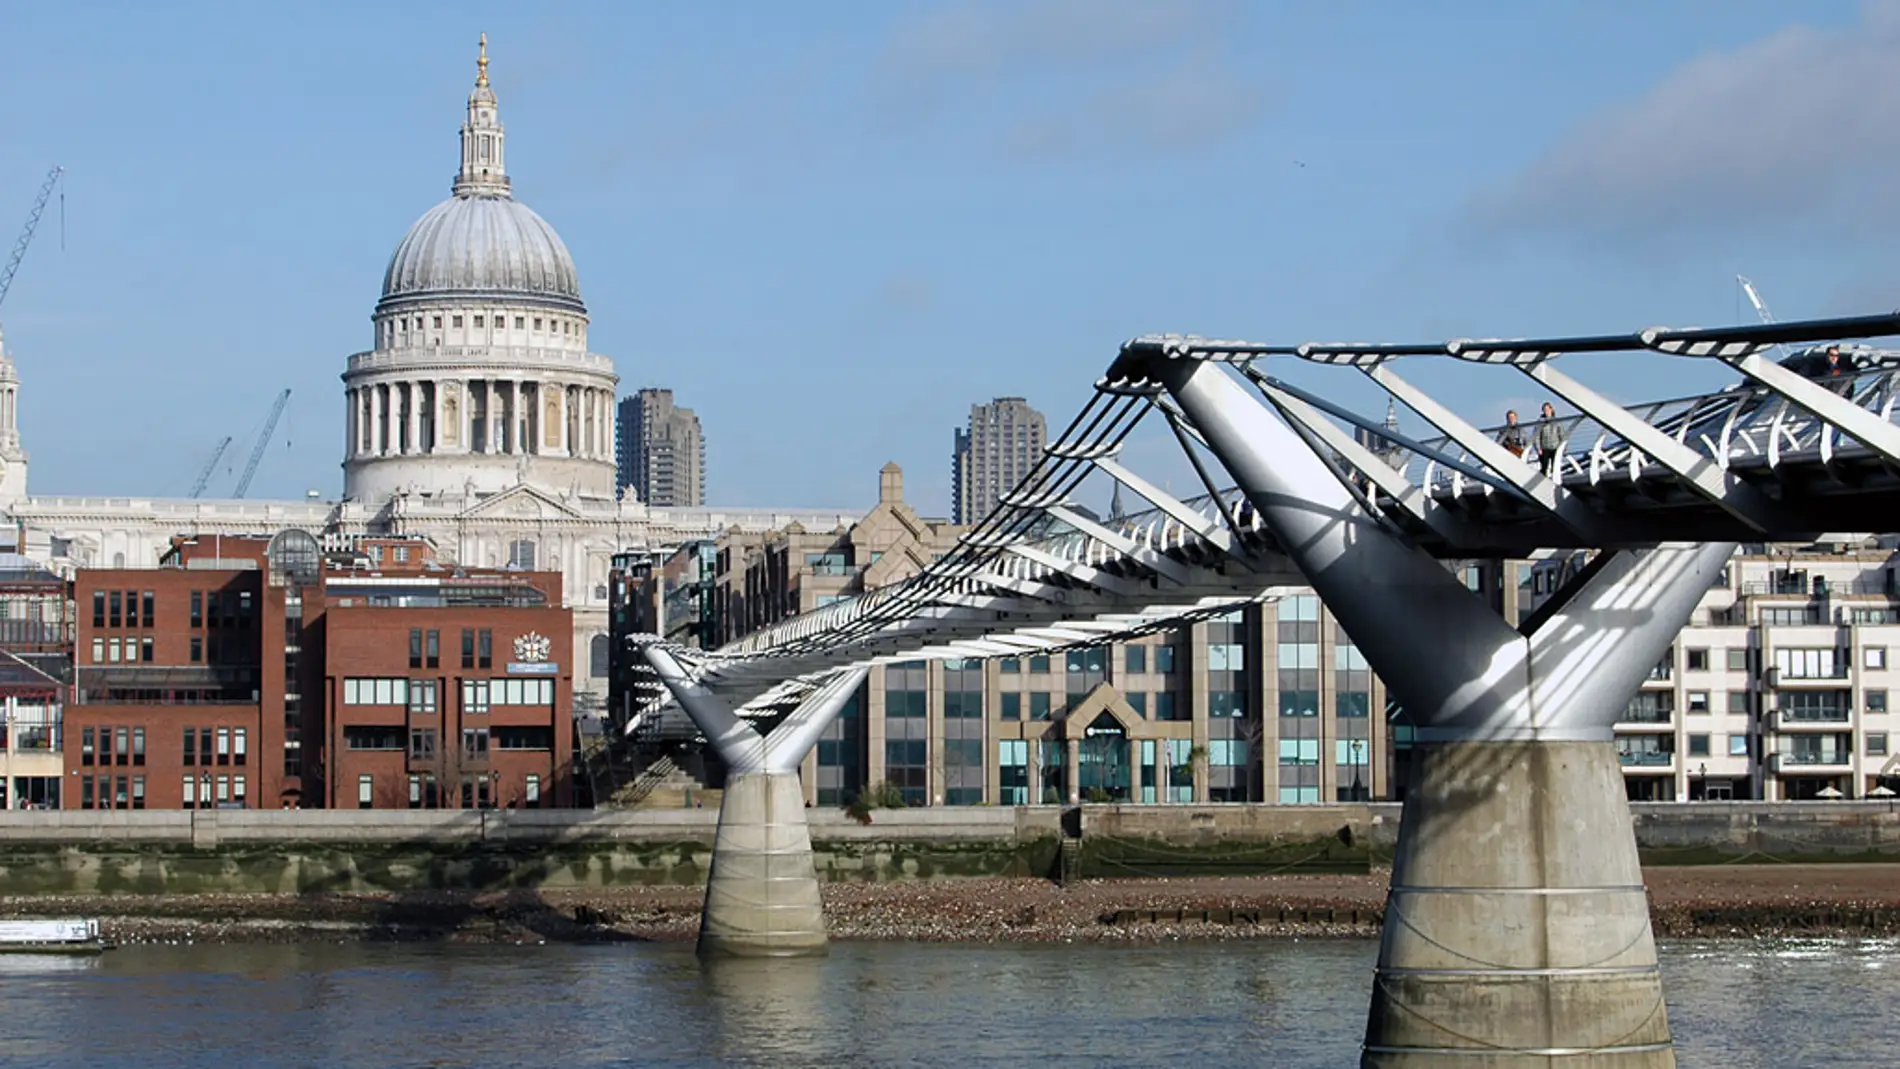 Millennium Bridge de Londres: ¿por qué es conocido popularmente como “puente tambaleante”?